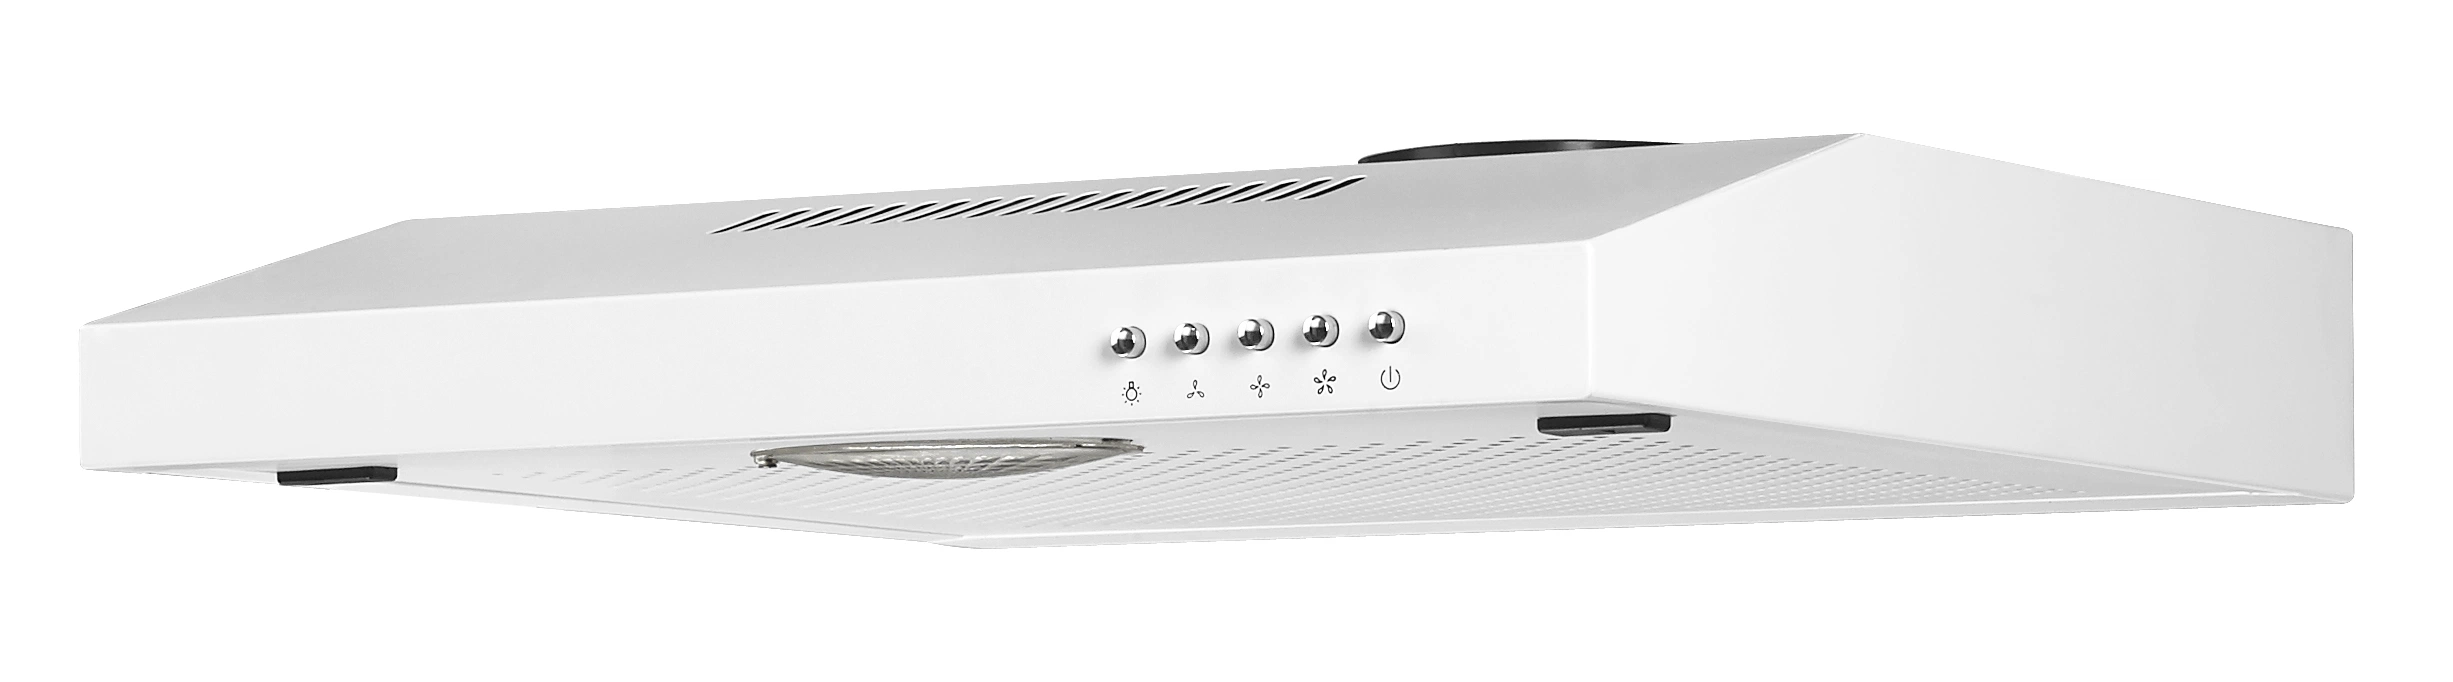 Nouveau design Artmoon Kitchen Equipment ATM-3401 Slim European style Range Hotte/hotte aspirante pour la cuisine